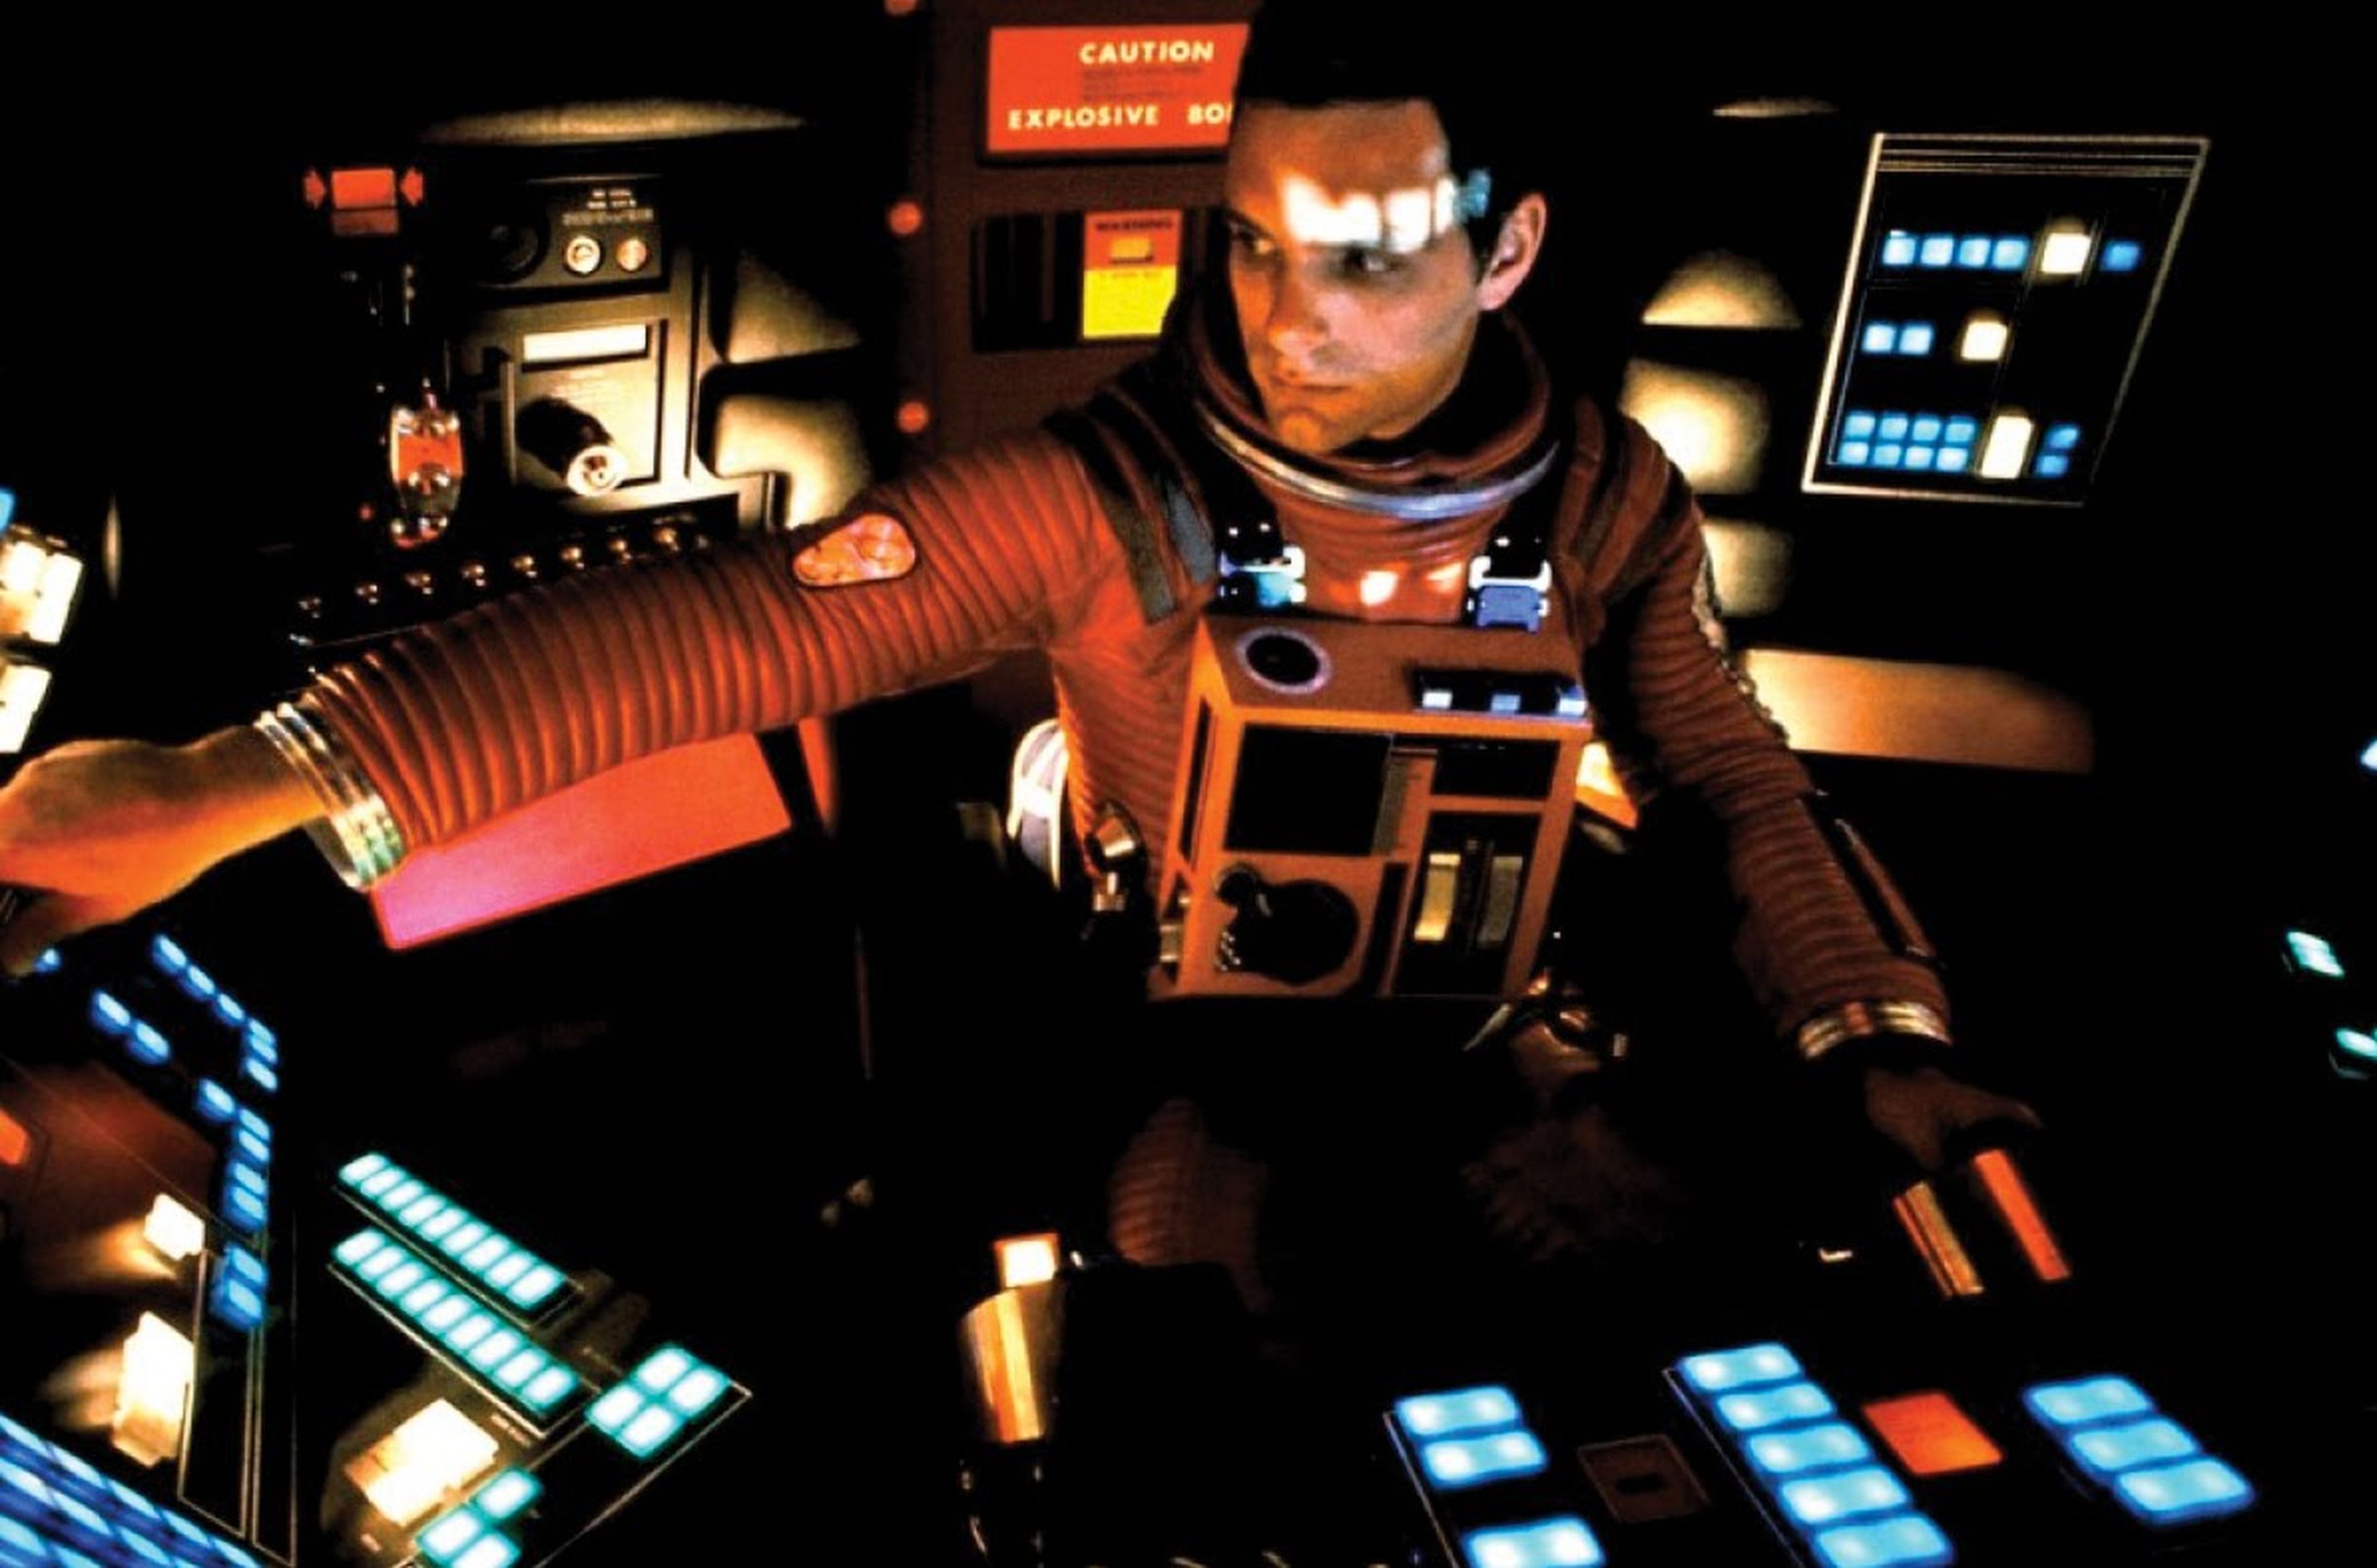 Cine de ciencia ficción: 2001, una odisea del espacio